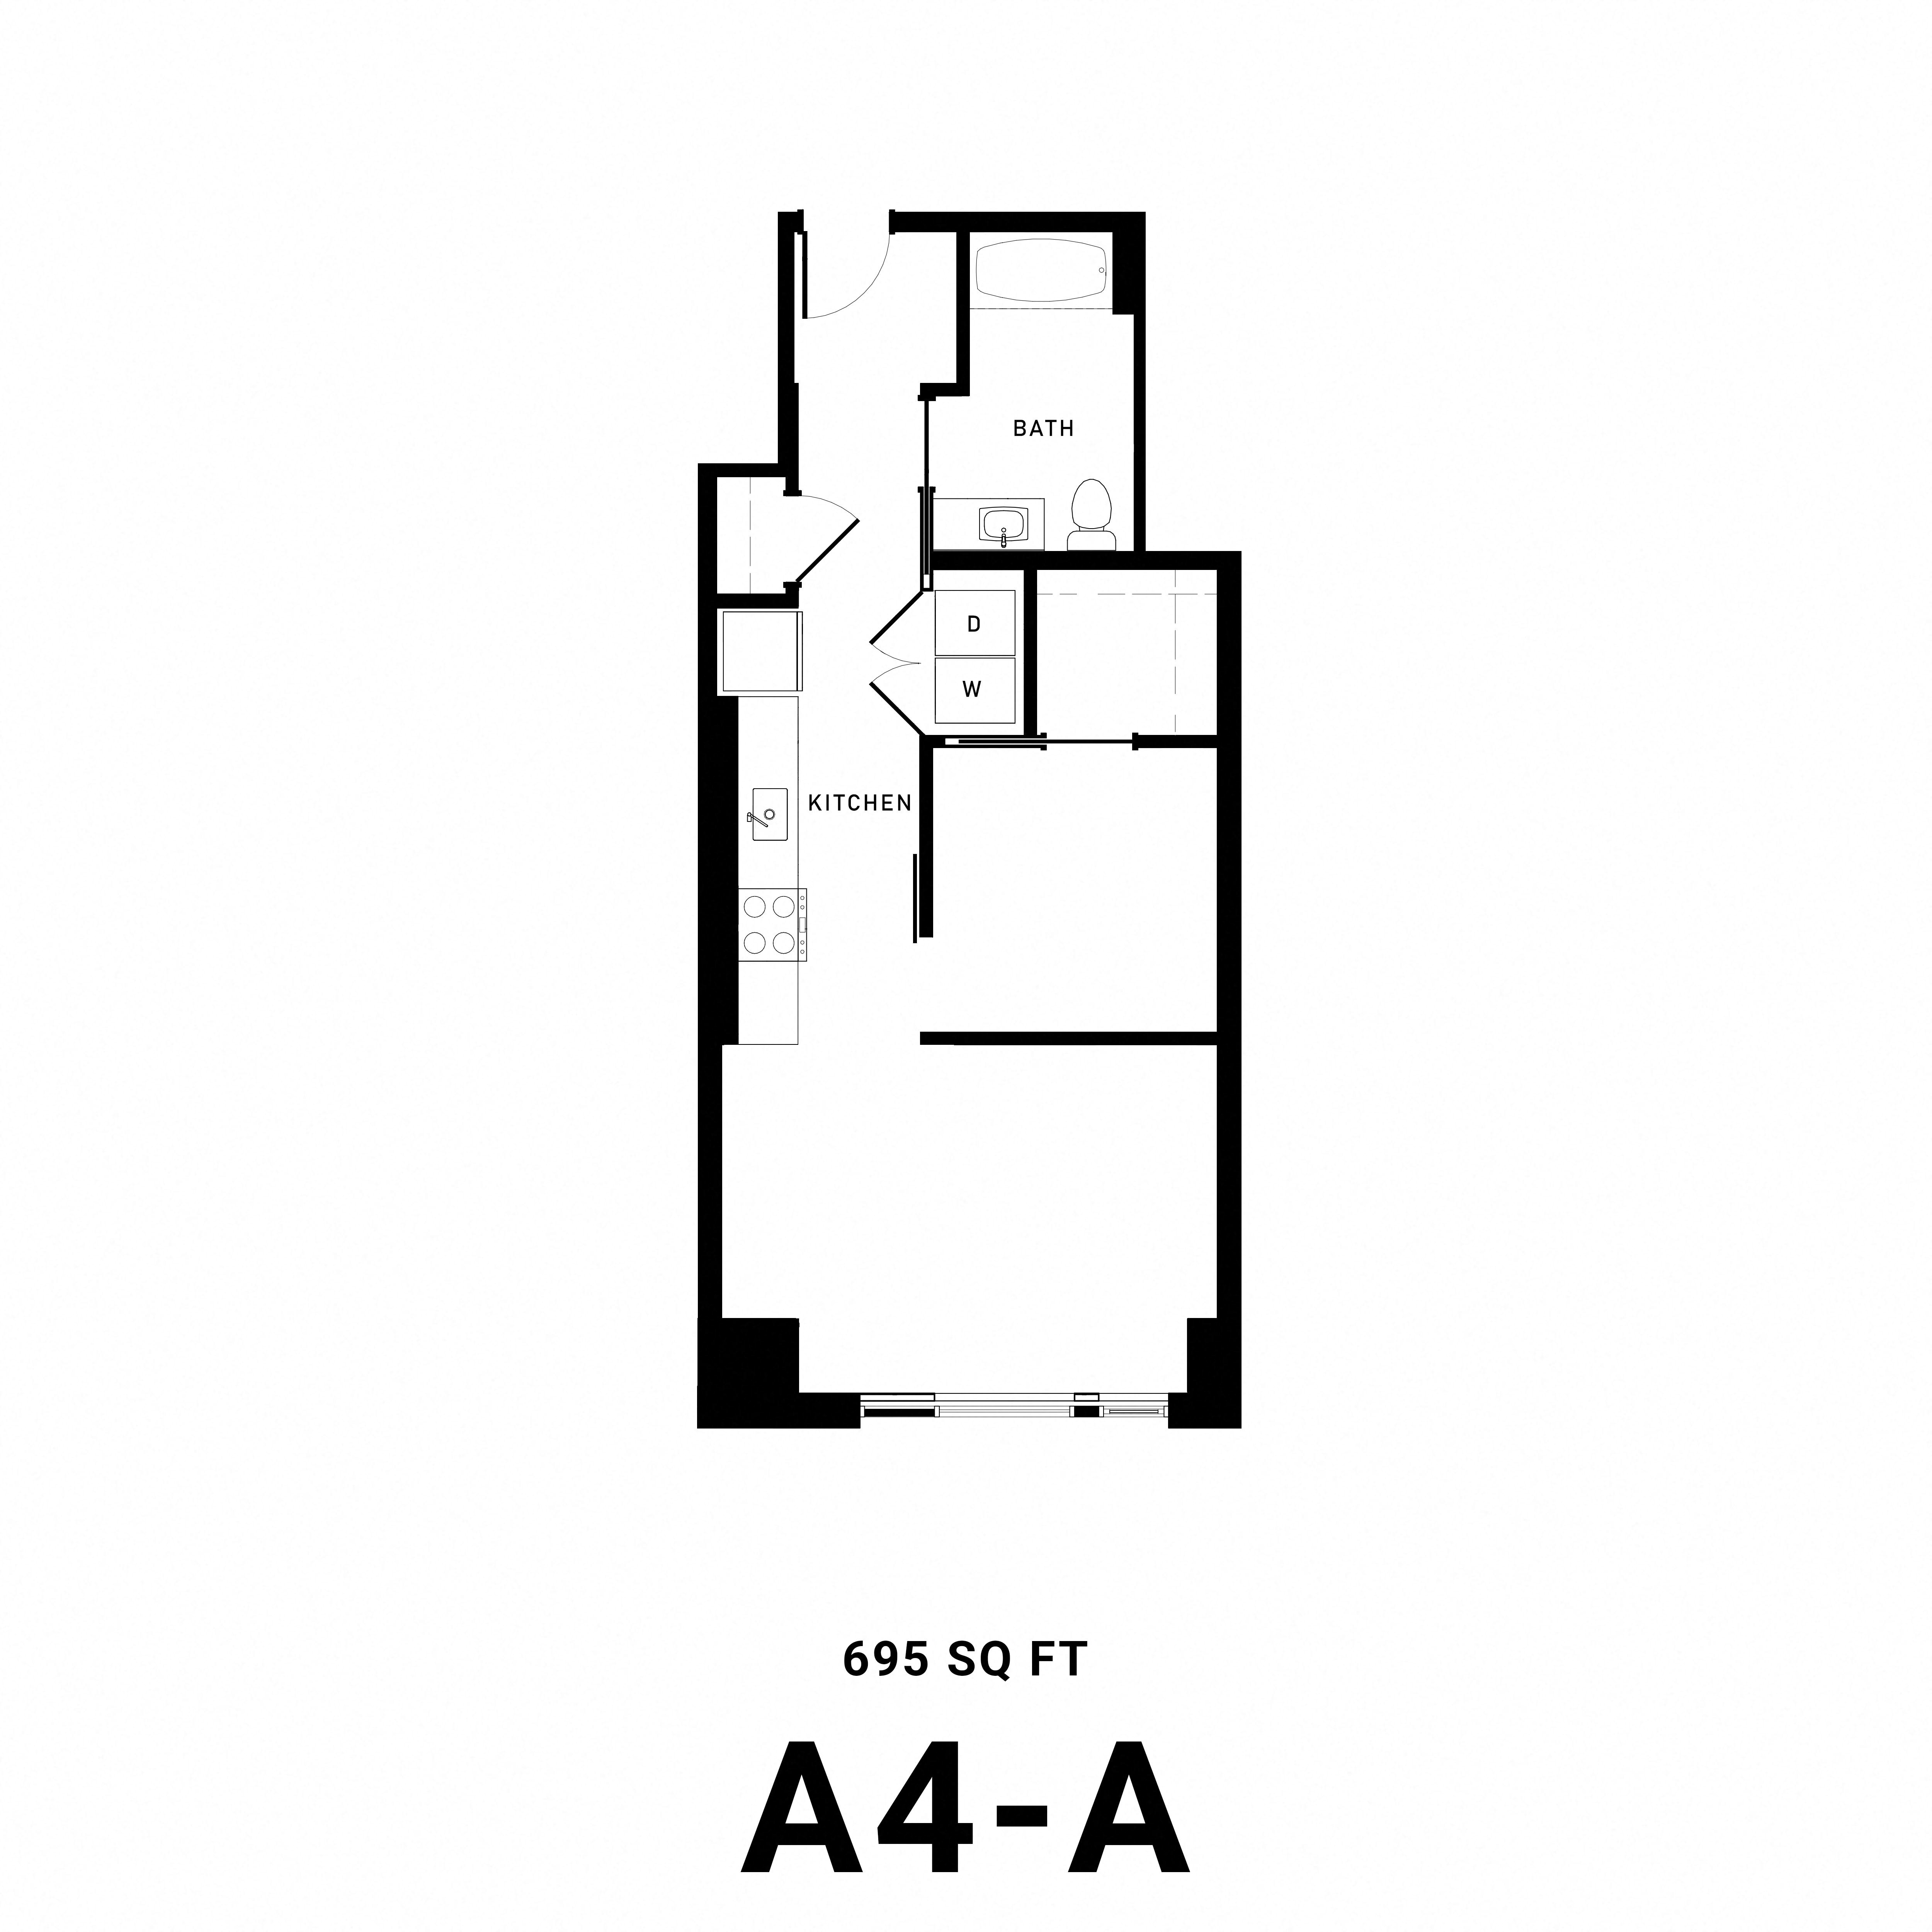 Floorplan A4A